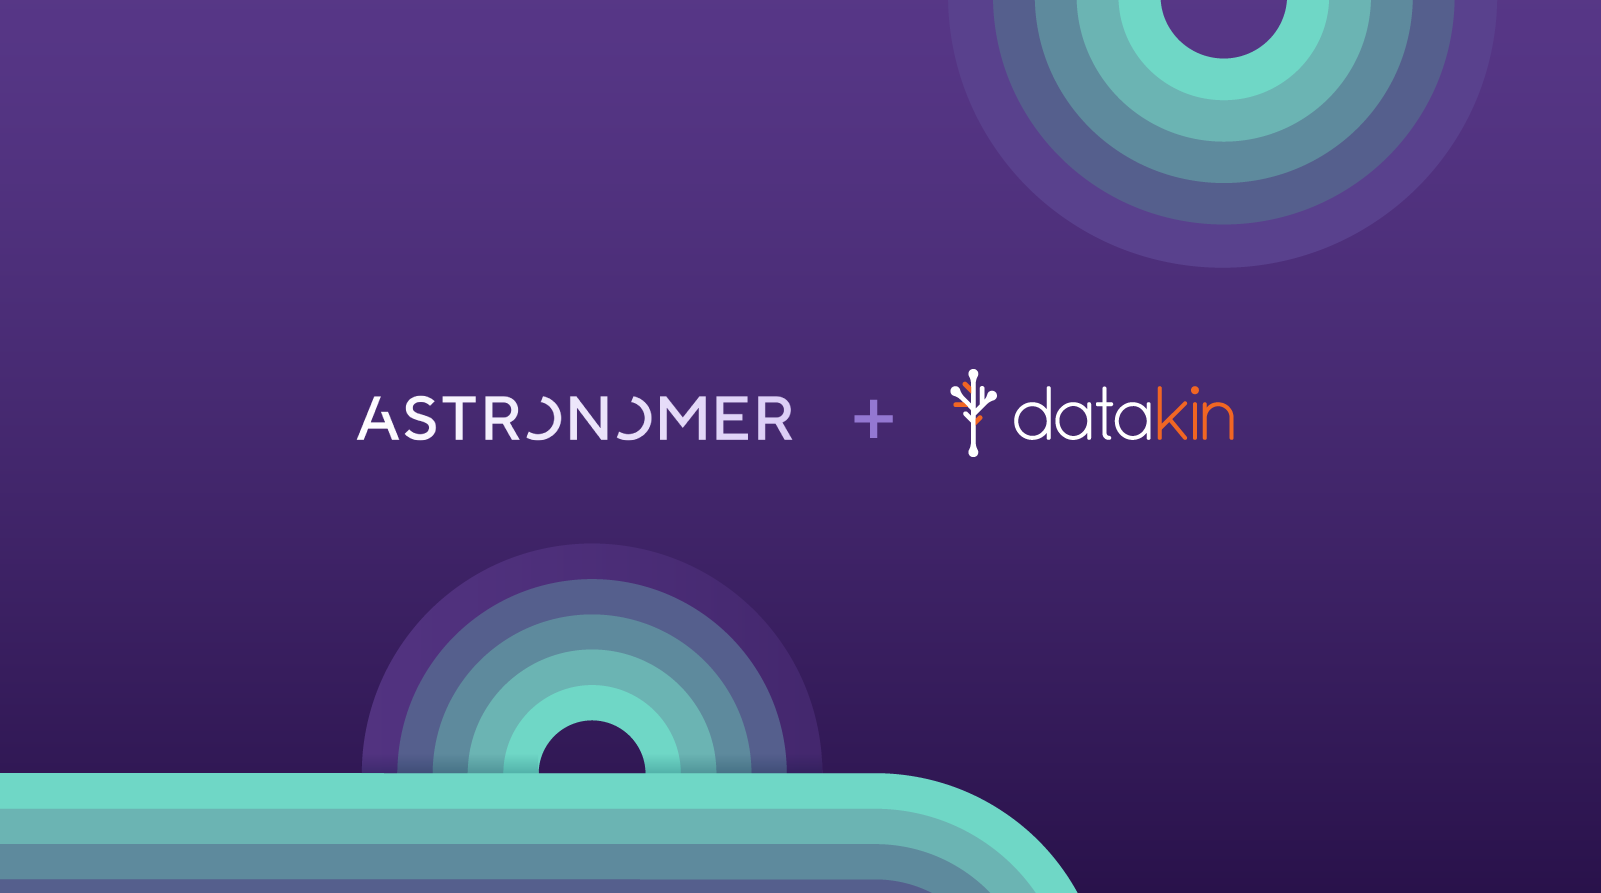 Cincinnati startup Astronomer raises $213M, acquires Datakin